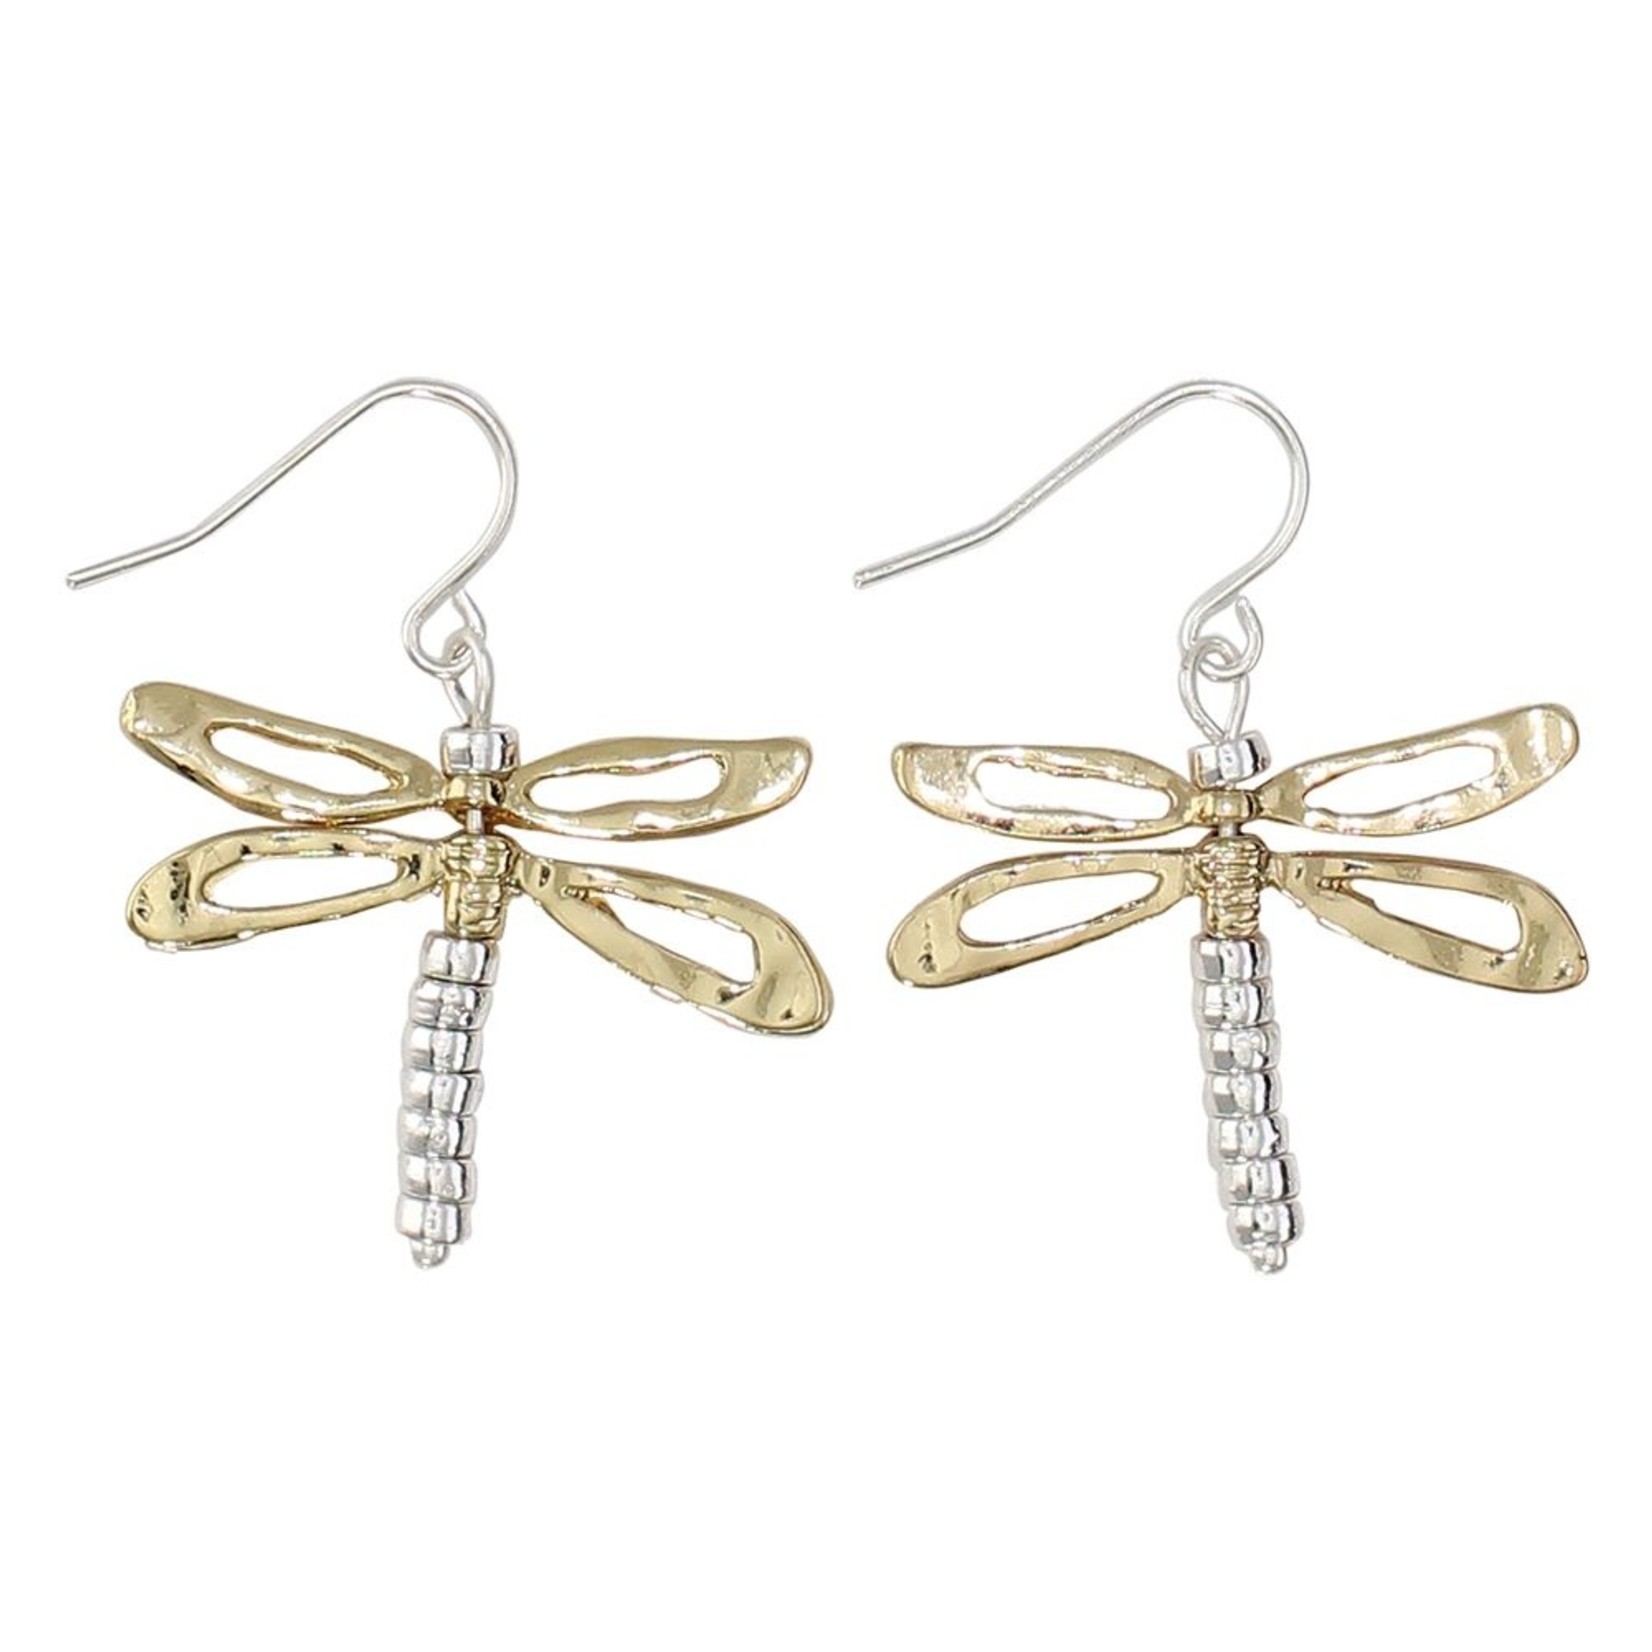 Periwinkle Periwinkle - Two Tone Dragonflies Earrings